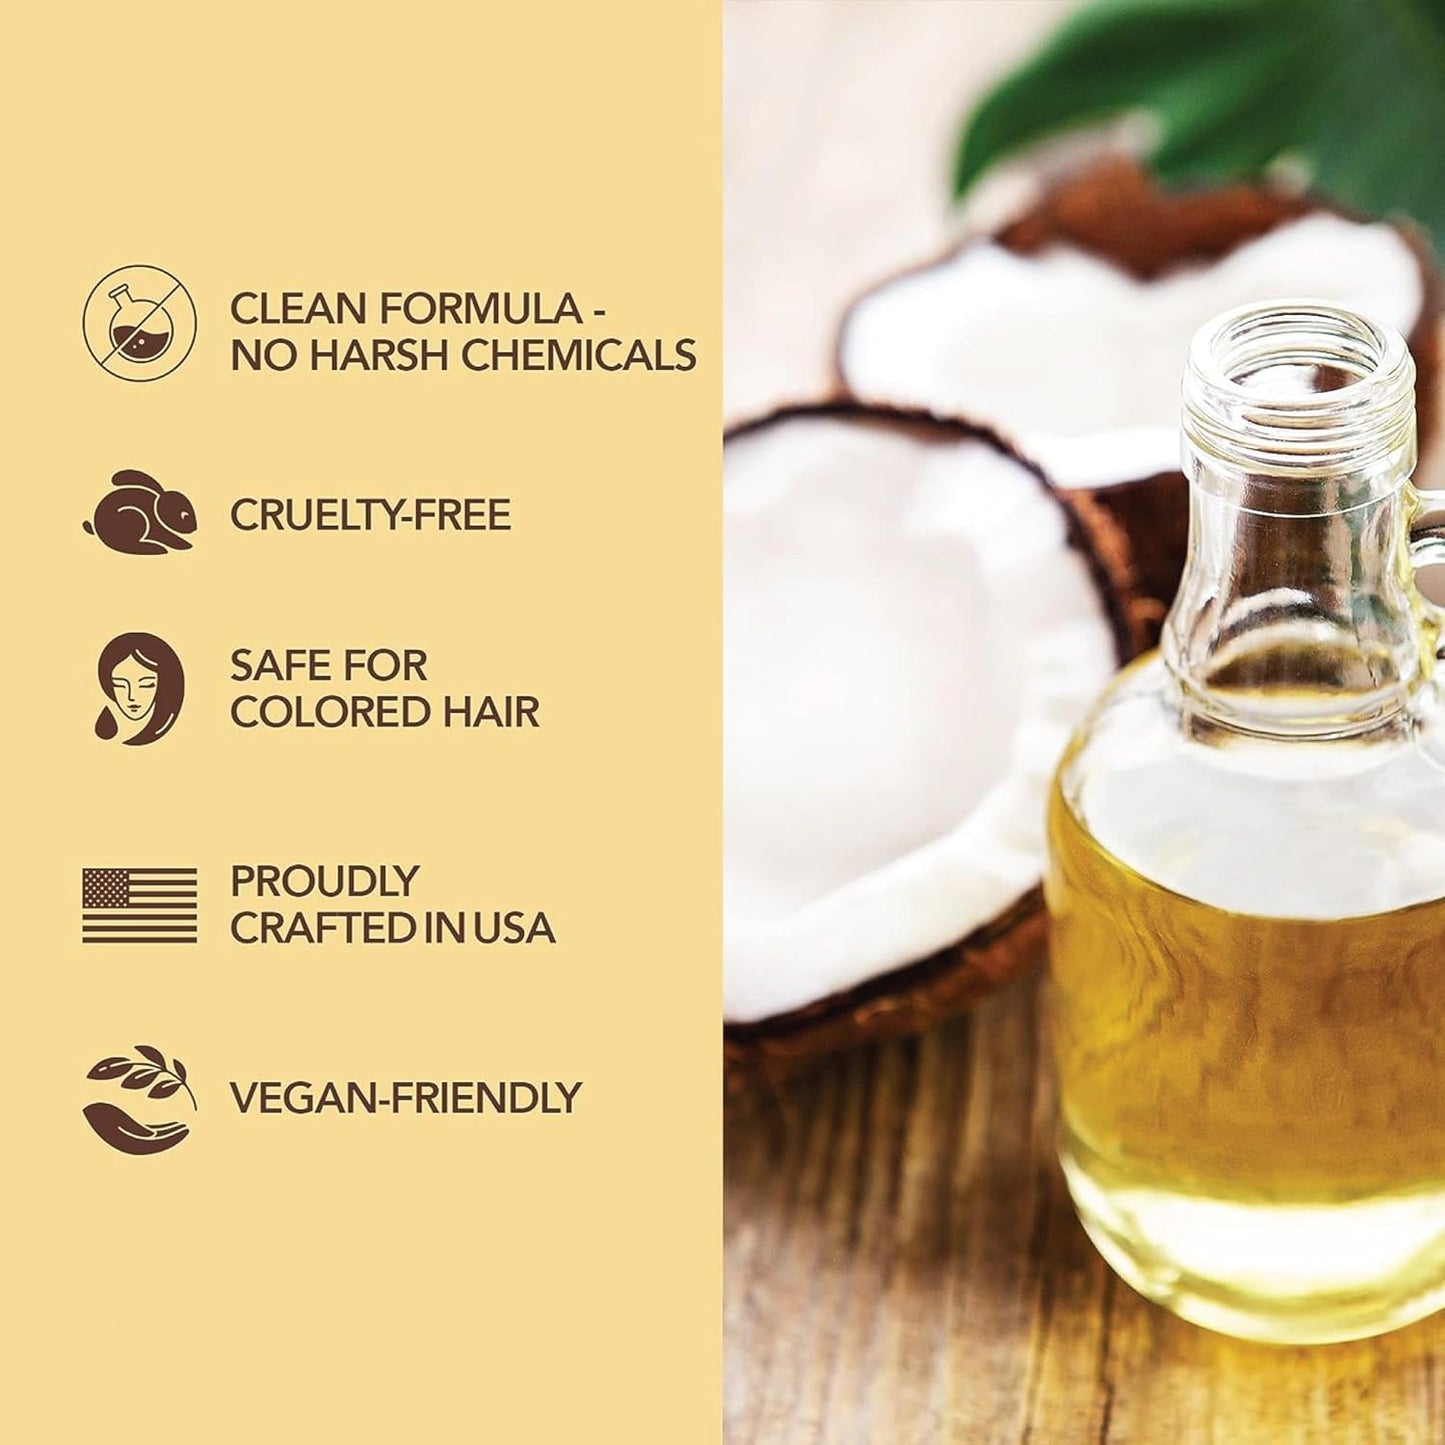 Eczema & Psoriasis Shampoo and Conditioner Set with Manuka Honey